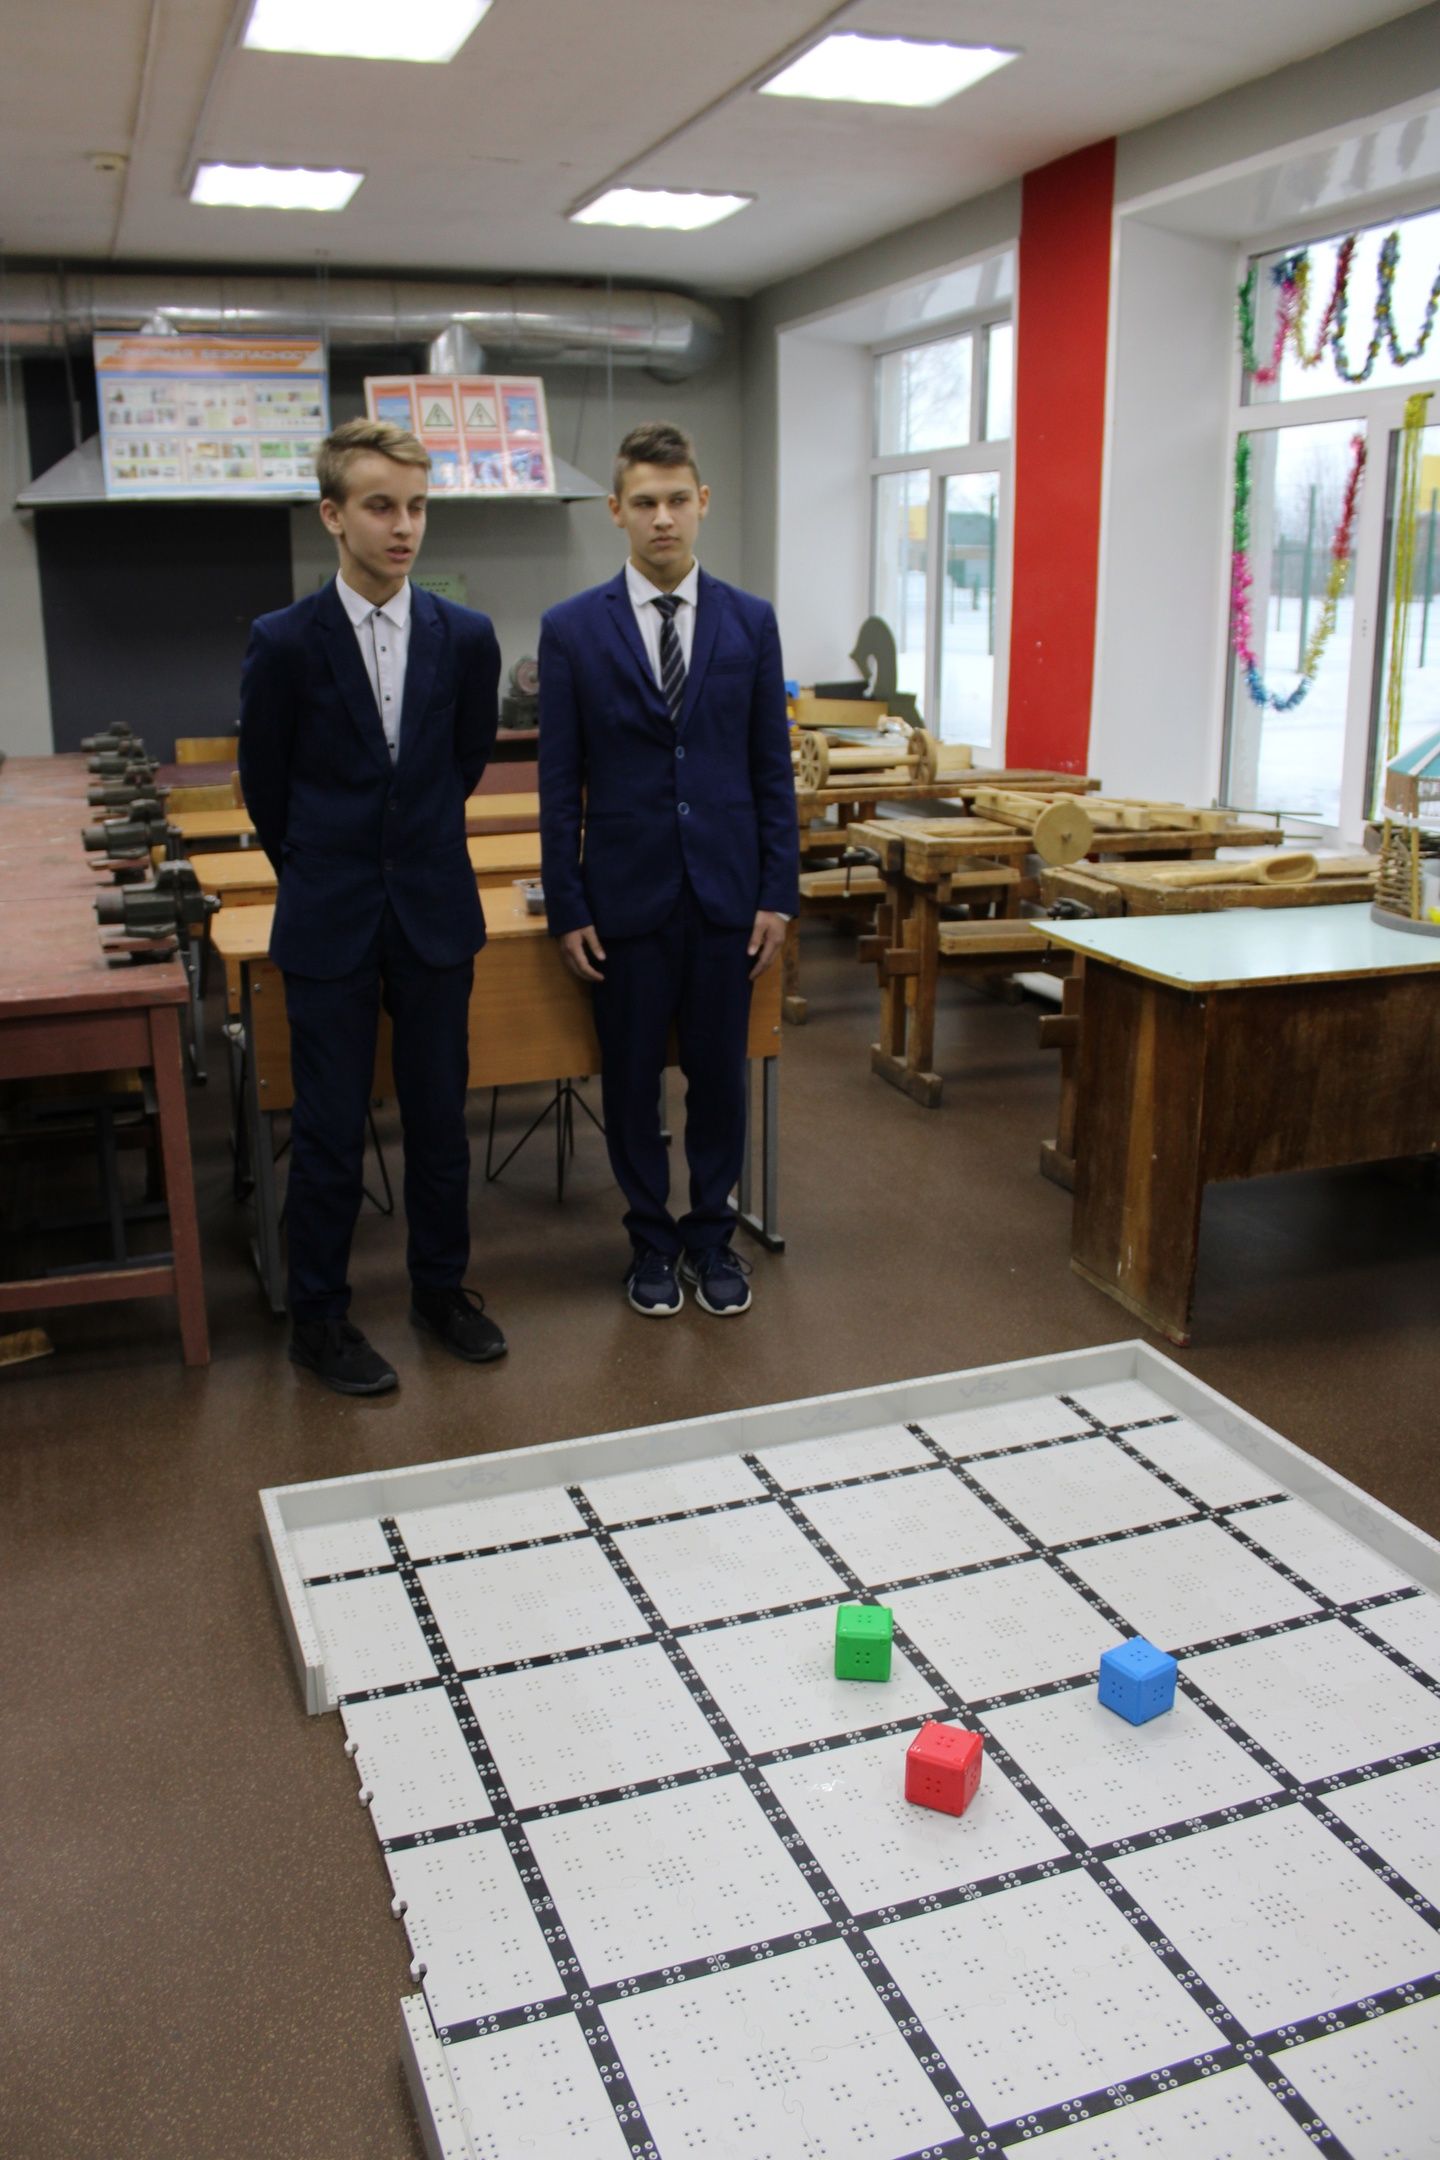 Ученики Кадыровской школы изготавливают и программируют роботов